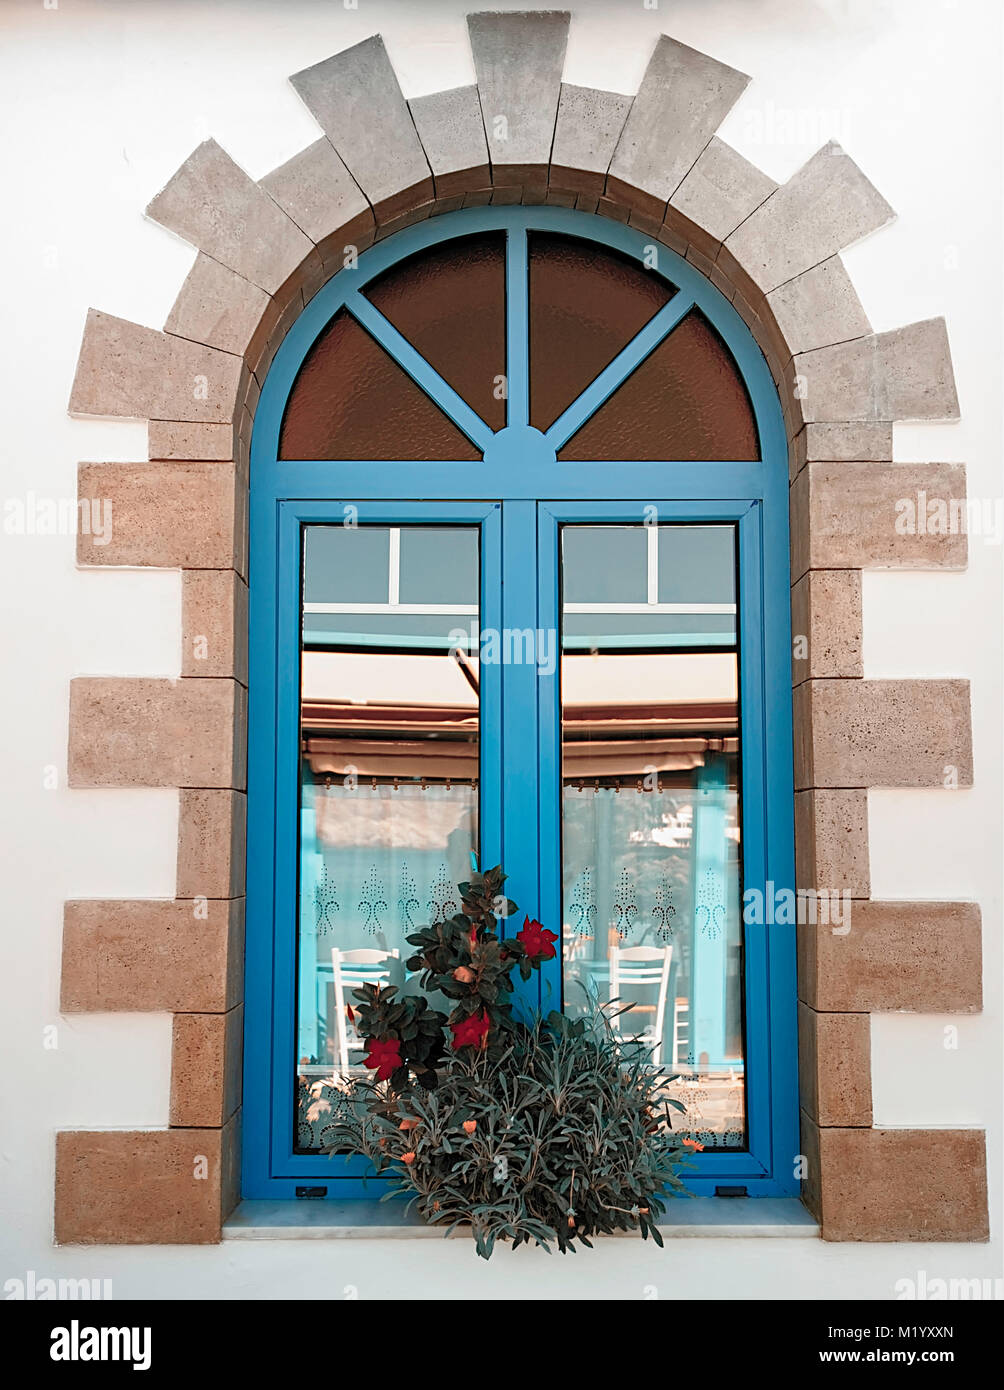 Greek Village Window. Mediterranean architecture. Stock Photo